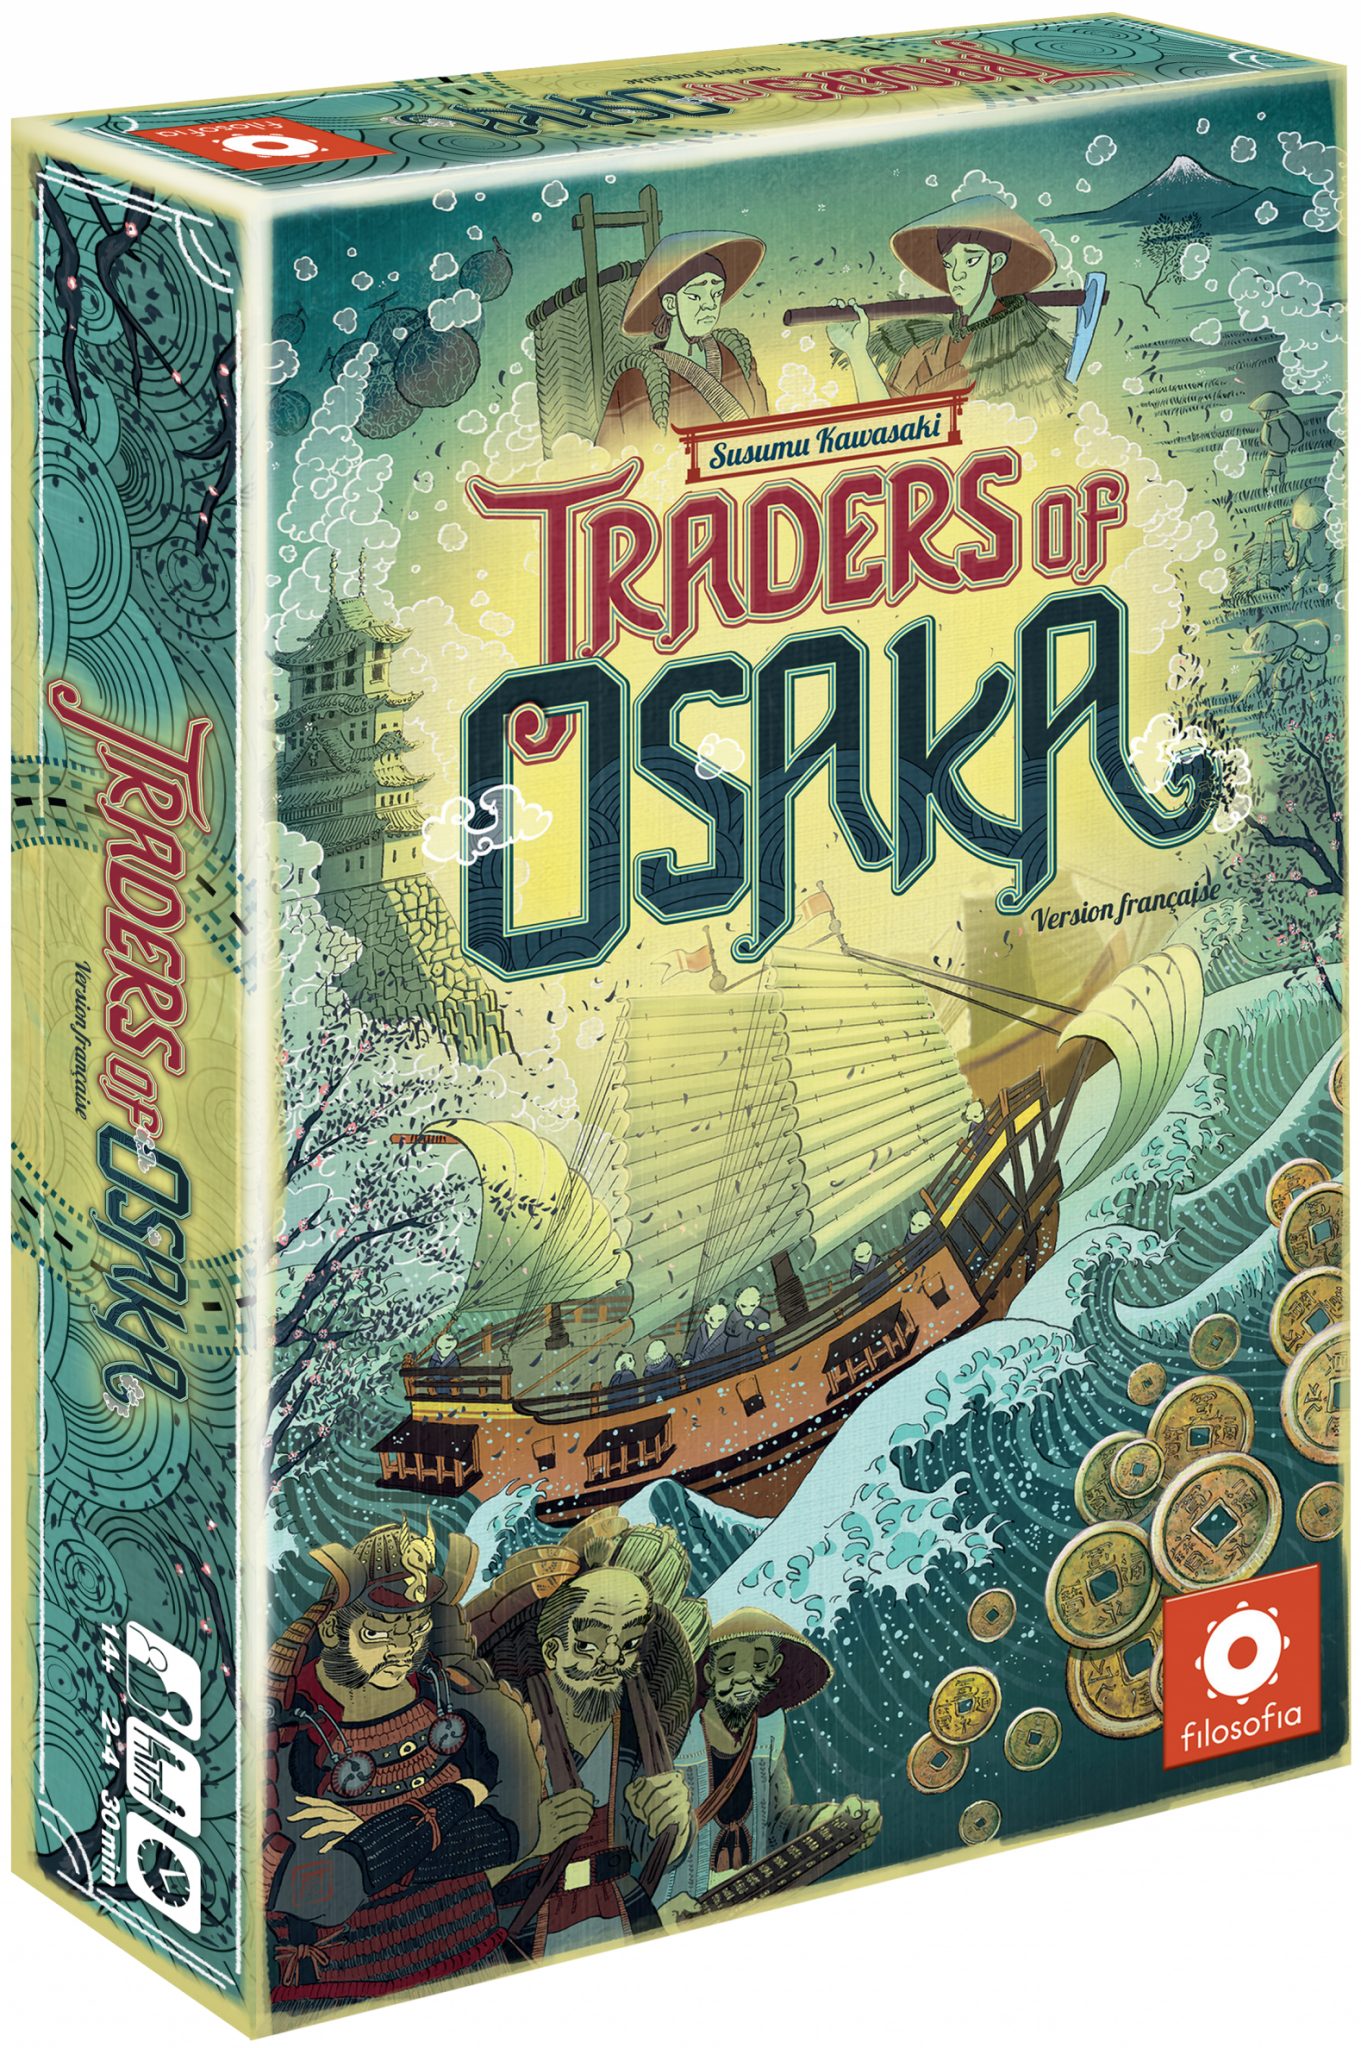 Boîte du jeu Traders of Osaka